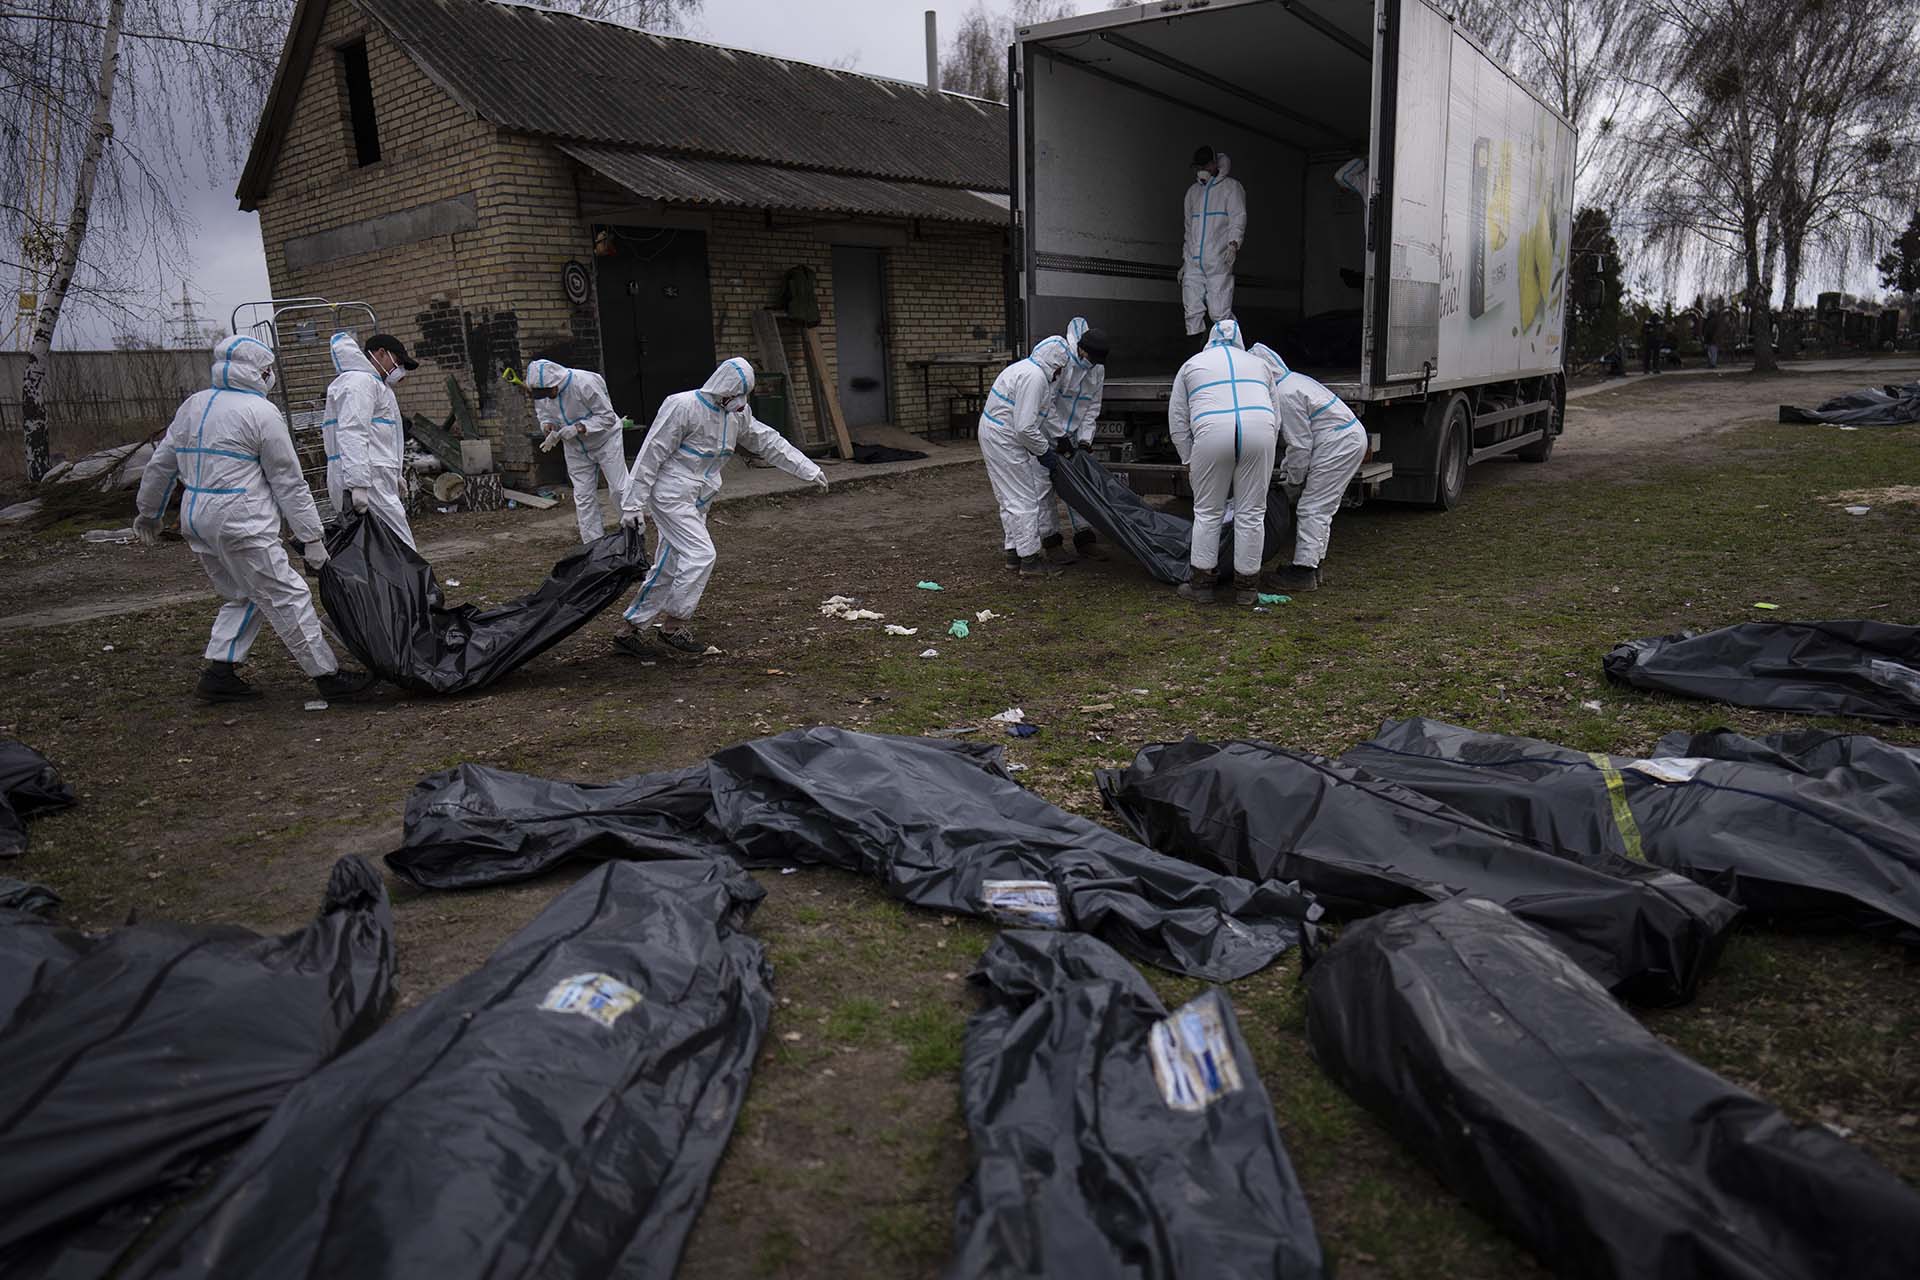 Voluntarios cargan en un camión los cadáveres de los civiles asesinados en Bucha para llevarlos a un depósito para su investigación, en las afueras de Kiev (AP Photo/Rodrigo Abd)